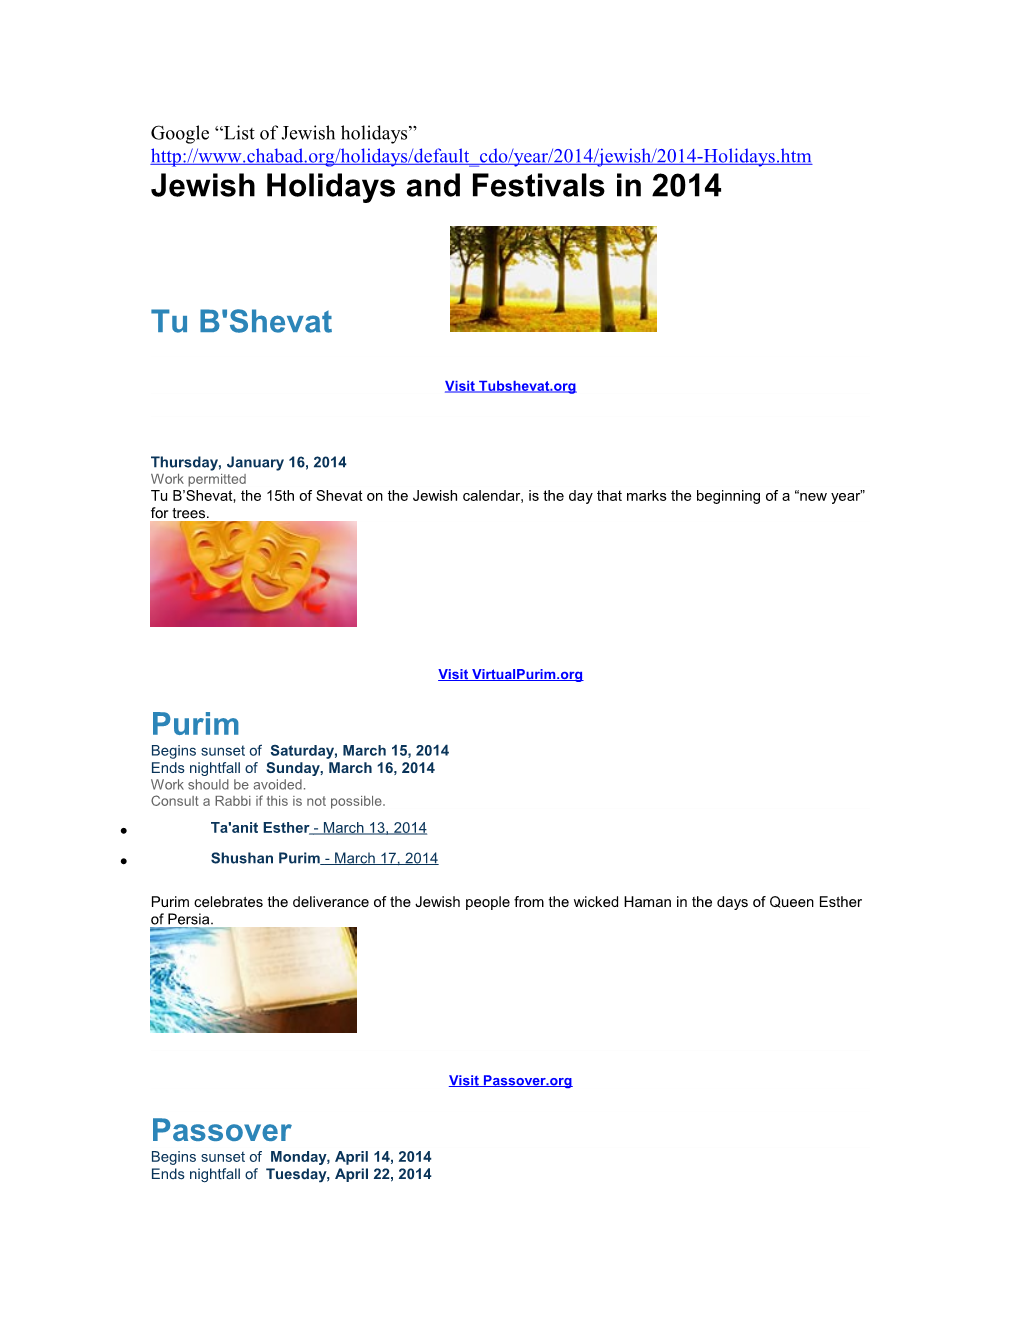 Google List of Jewish Holidays